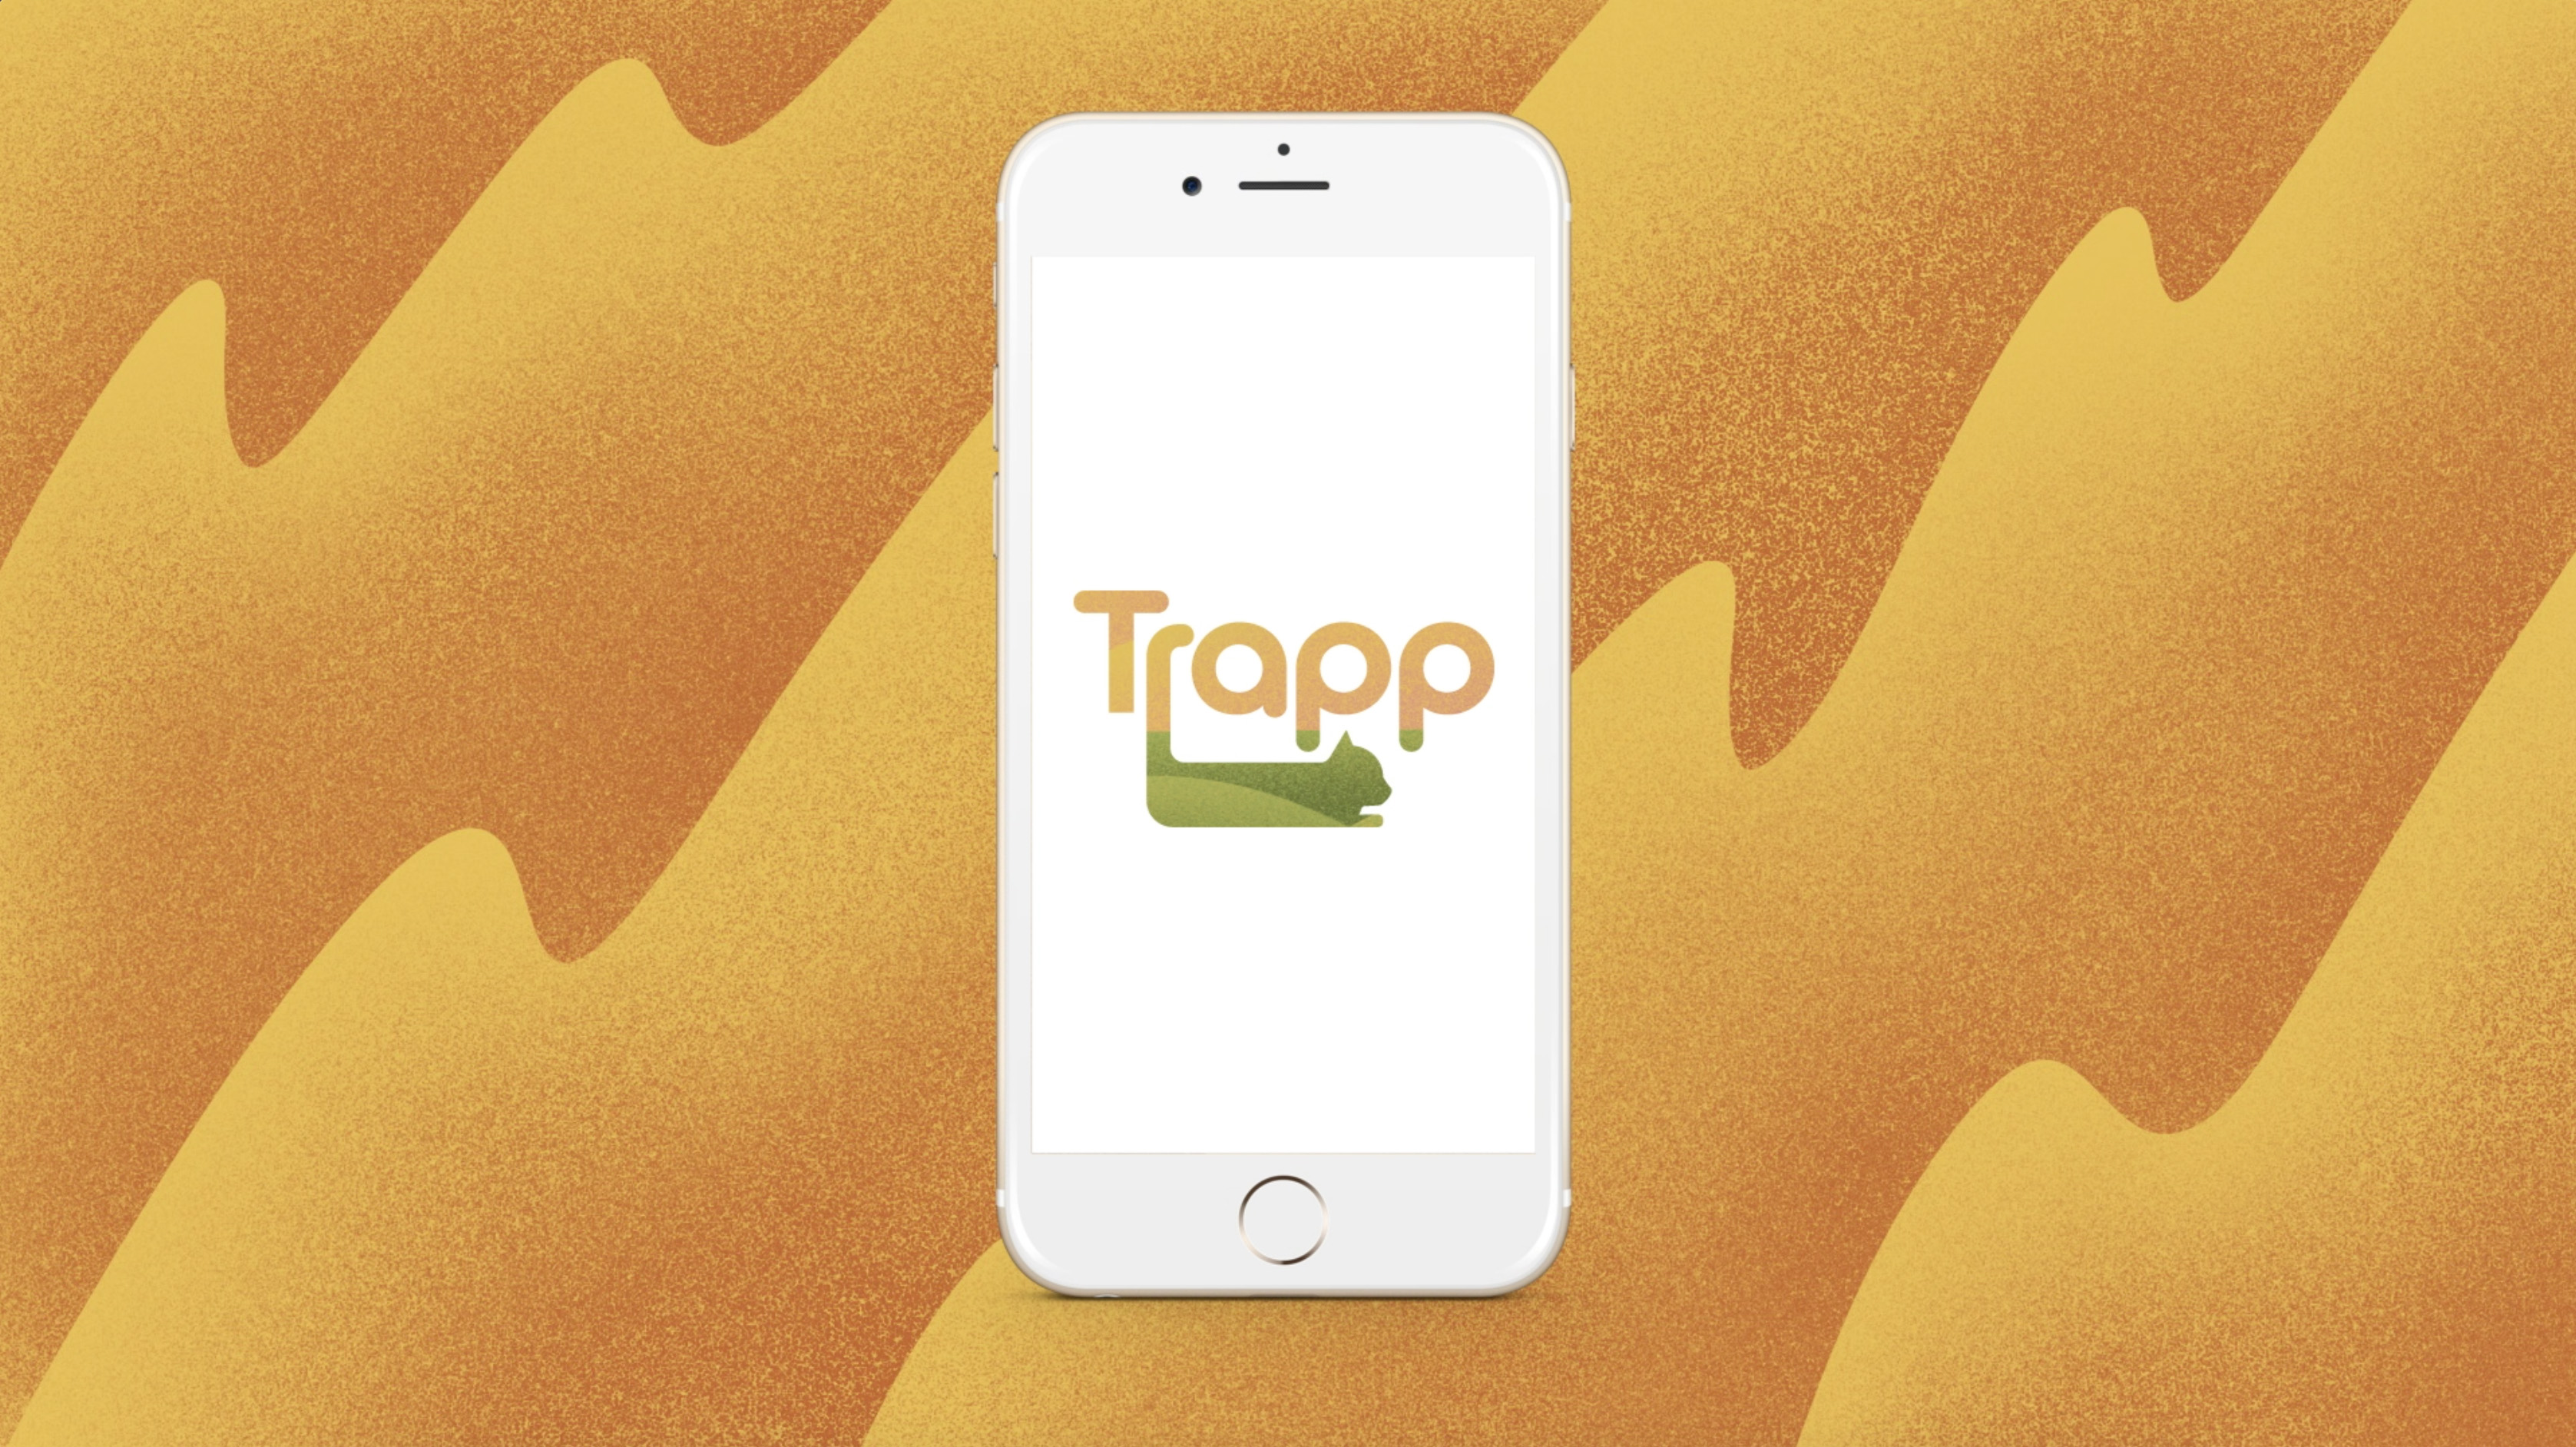 Trapp App icon